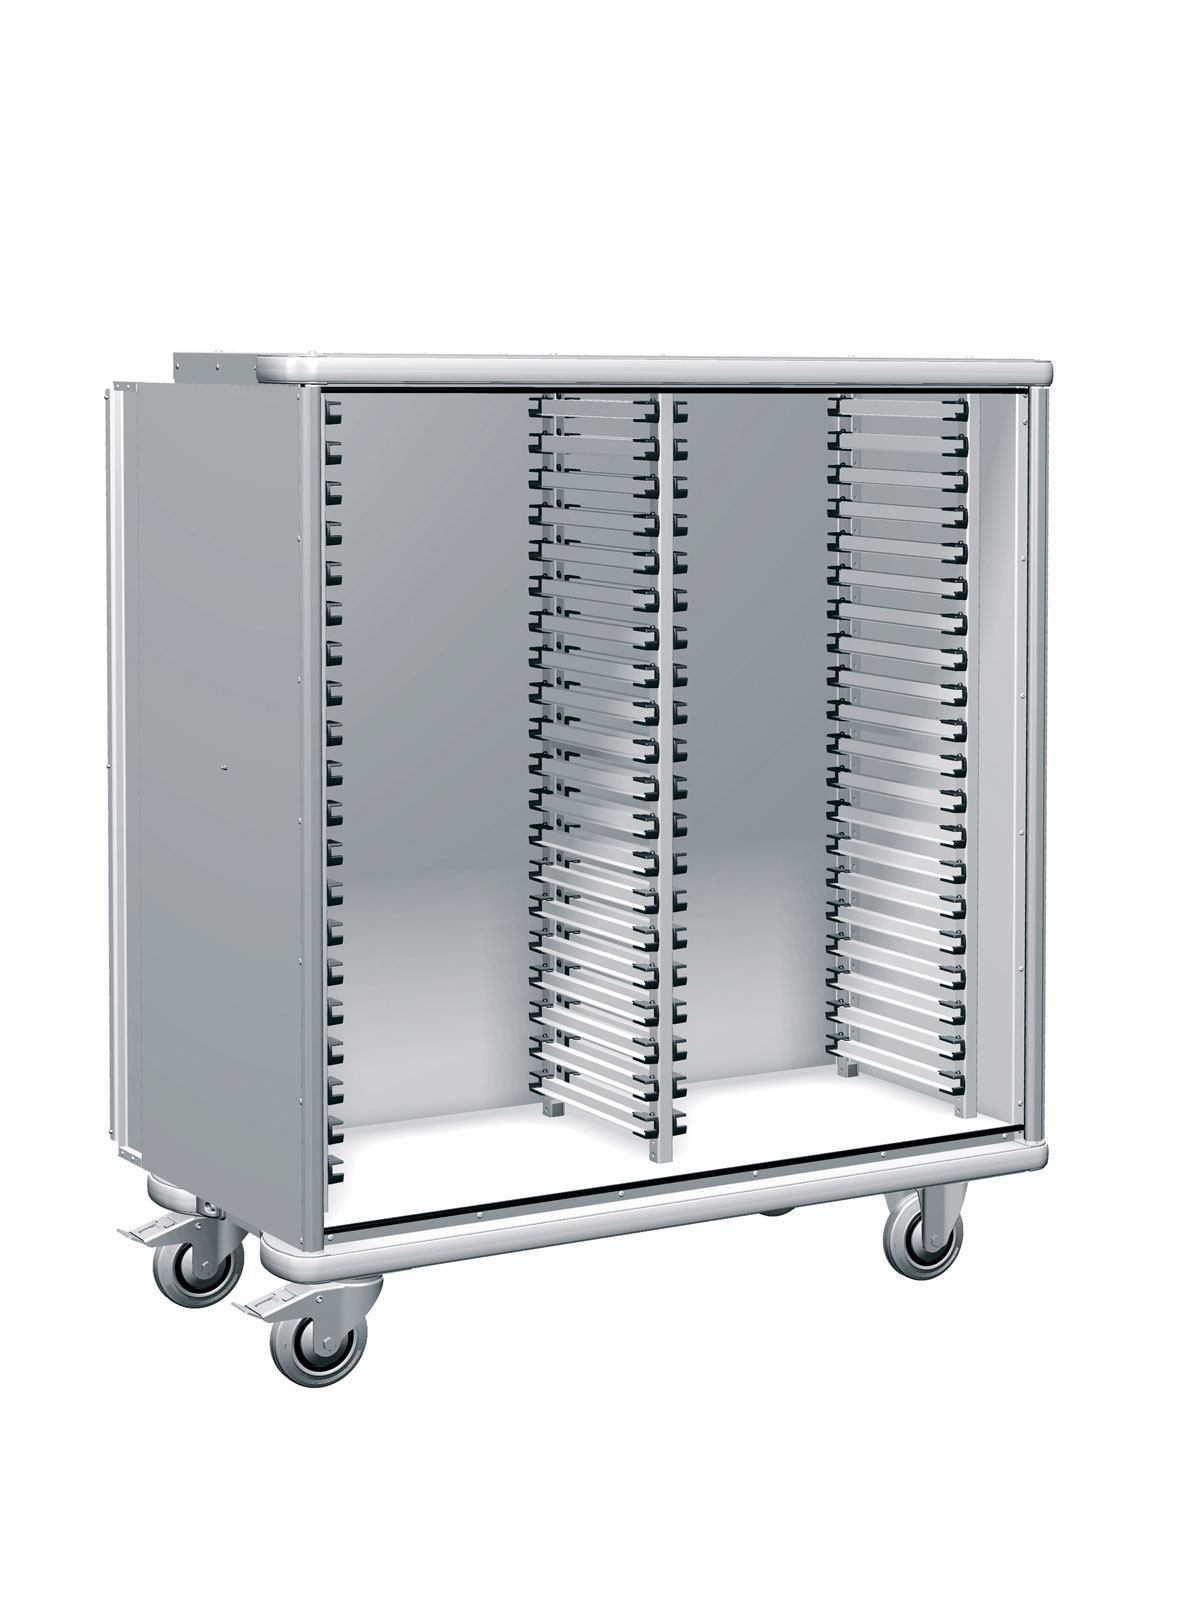 W105 Storage cart SKU 379450